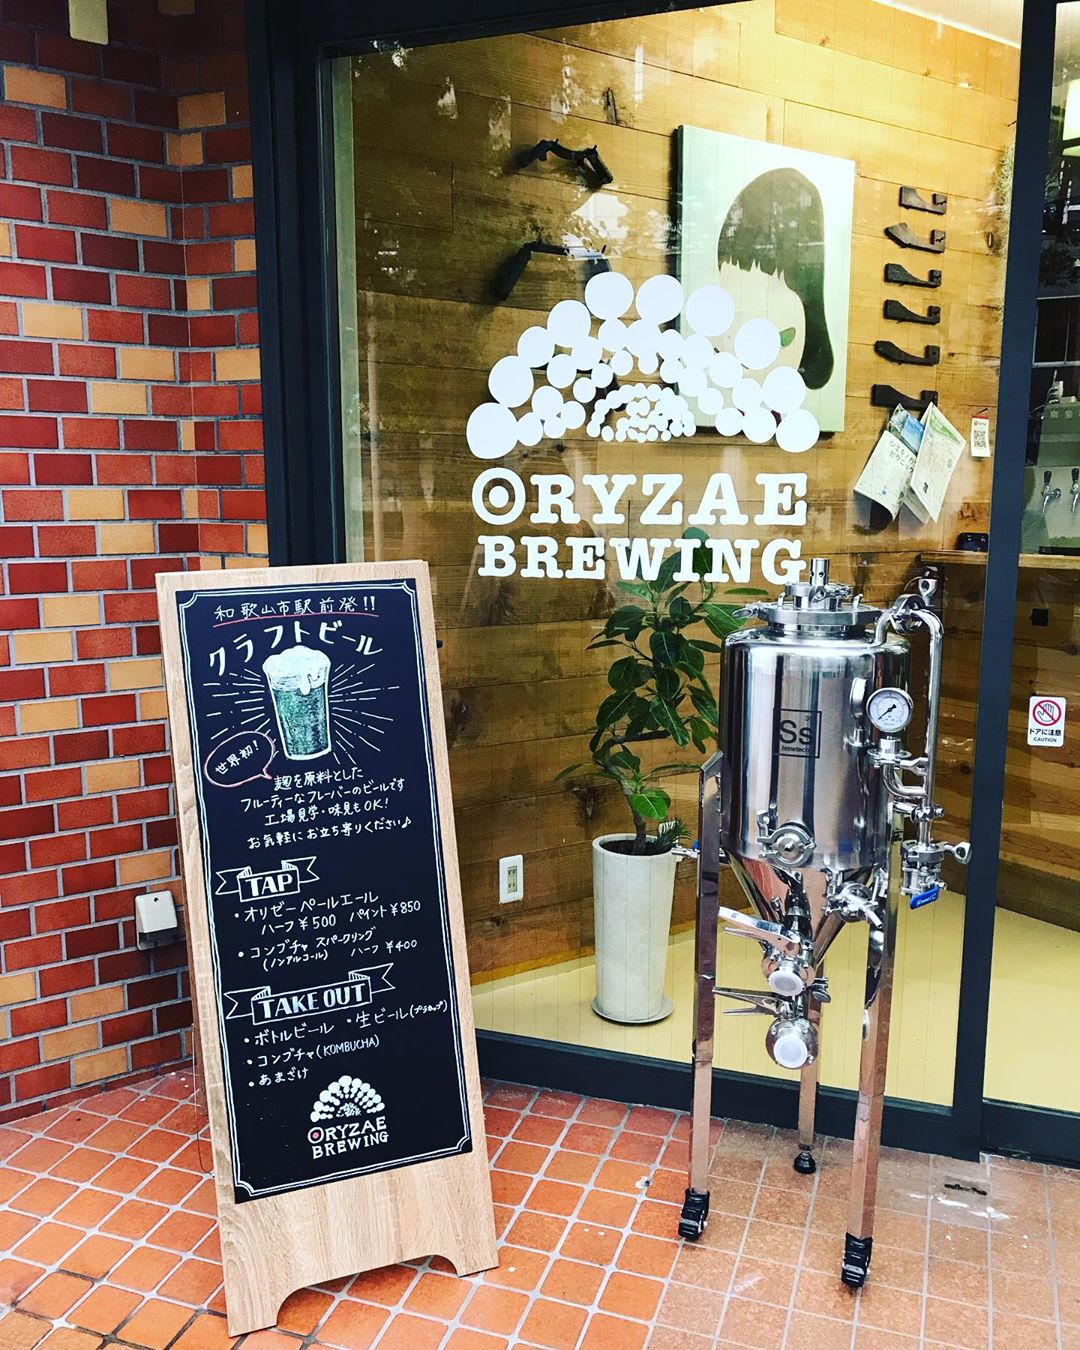 japanese craft beers - Oryzae Brewing